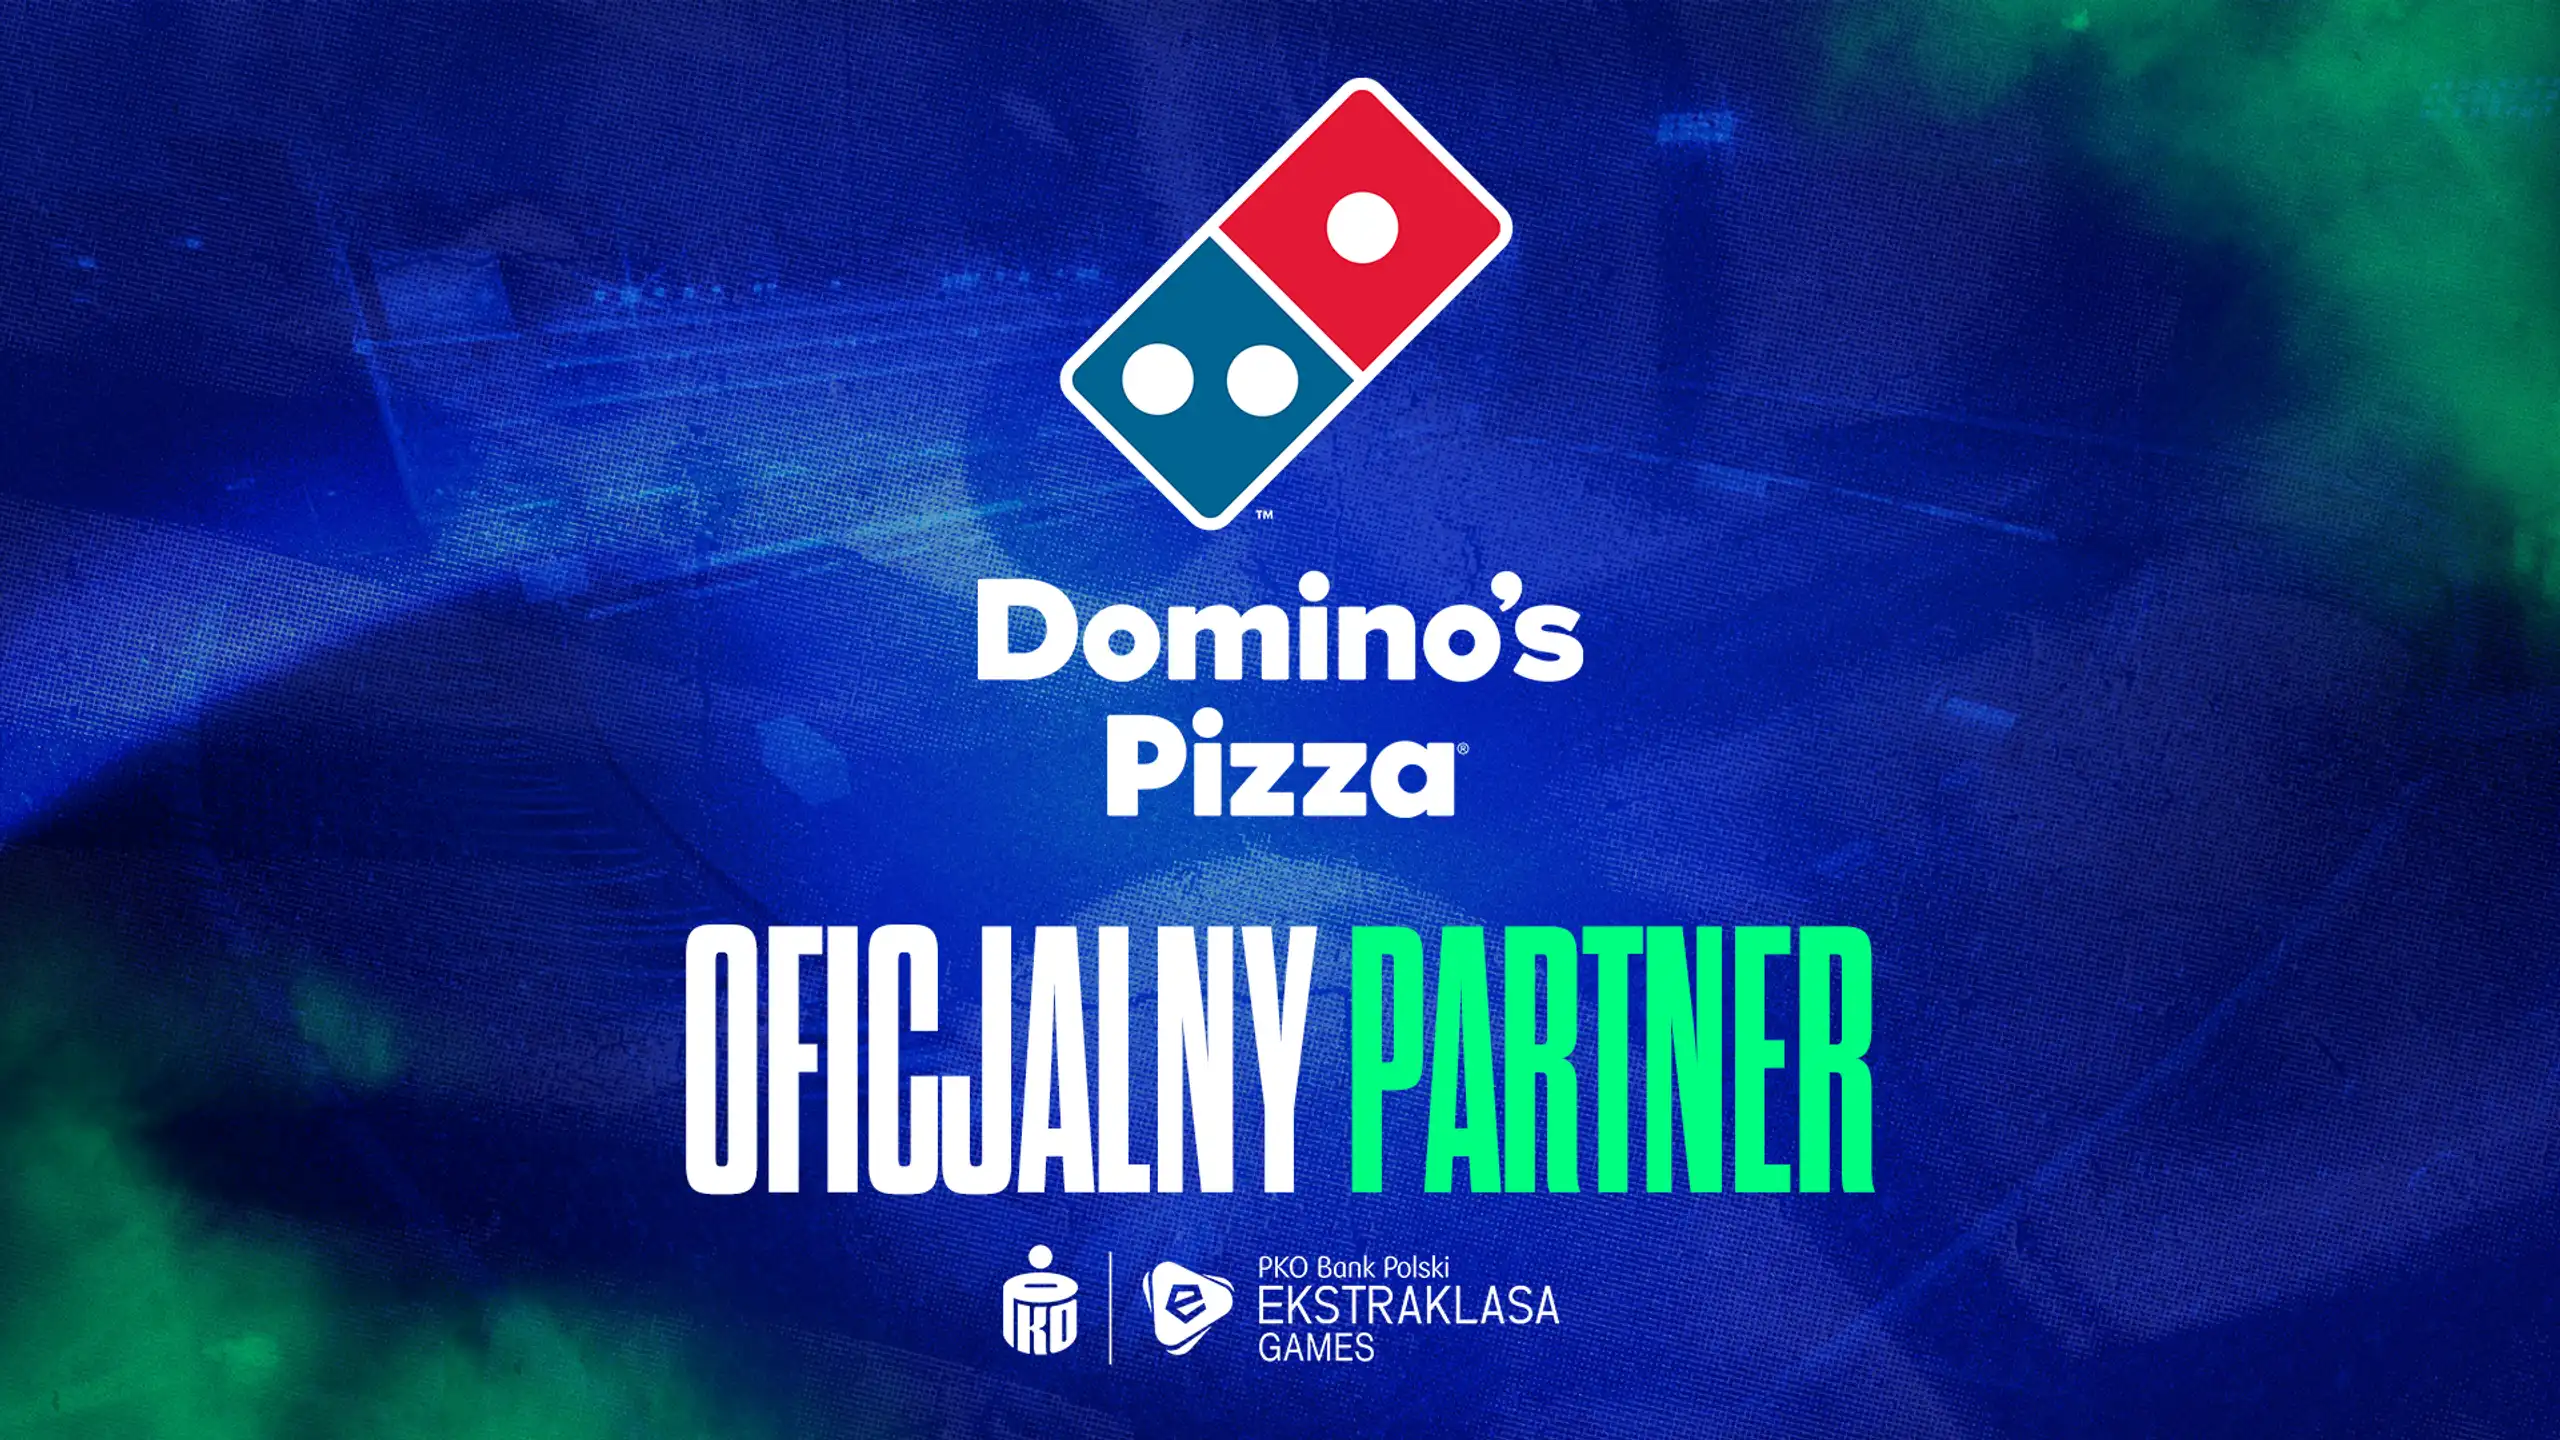 Domino’s Pizza partnerem PKO Bank Polski Ekstraklasa Games